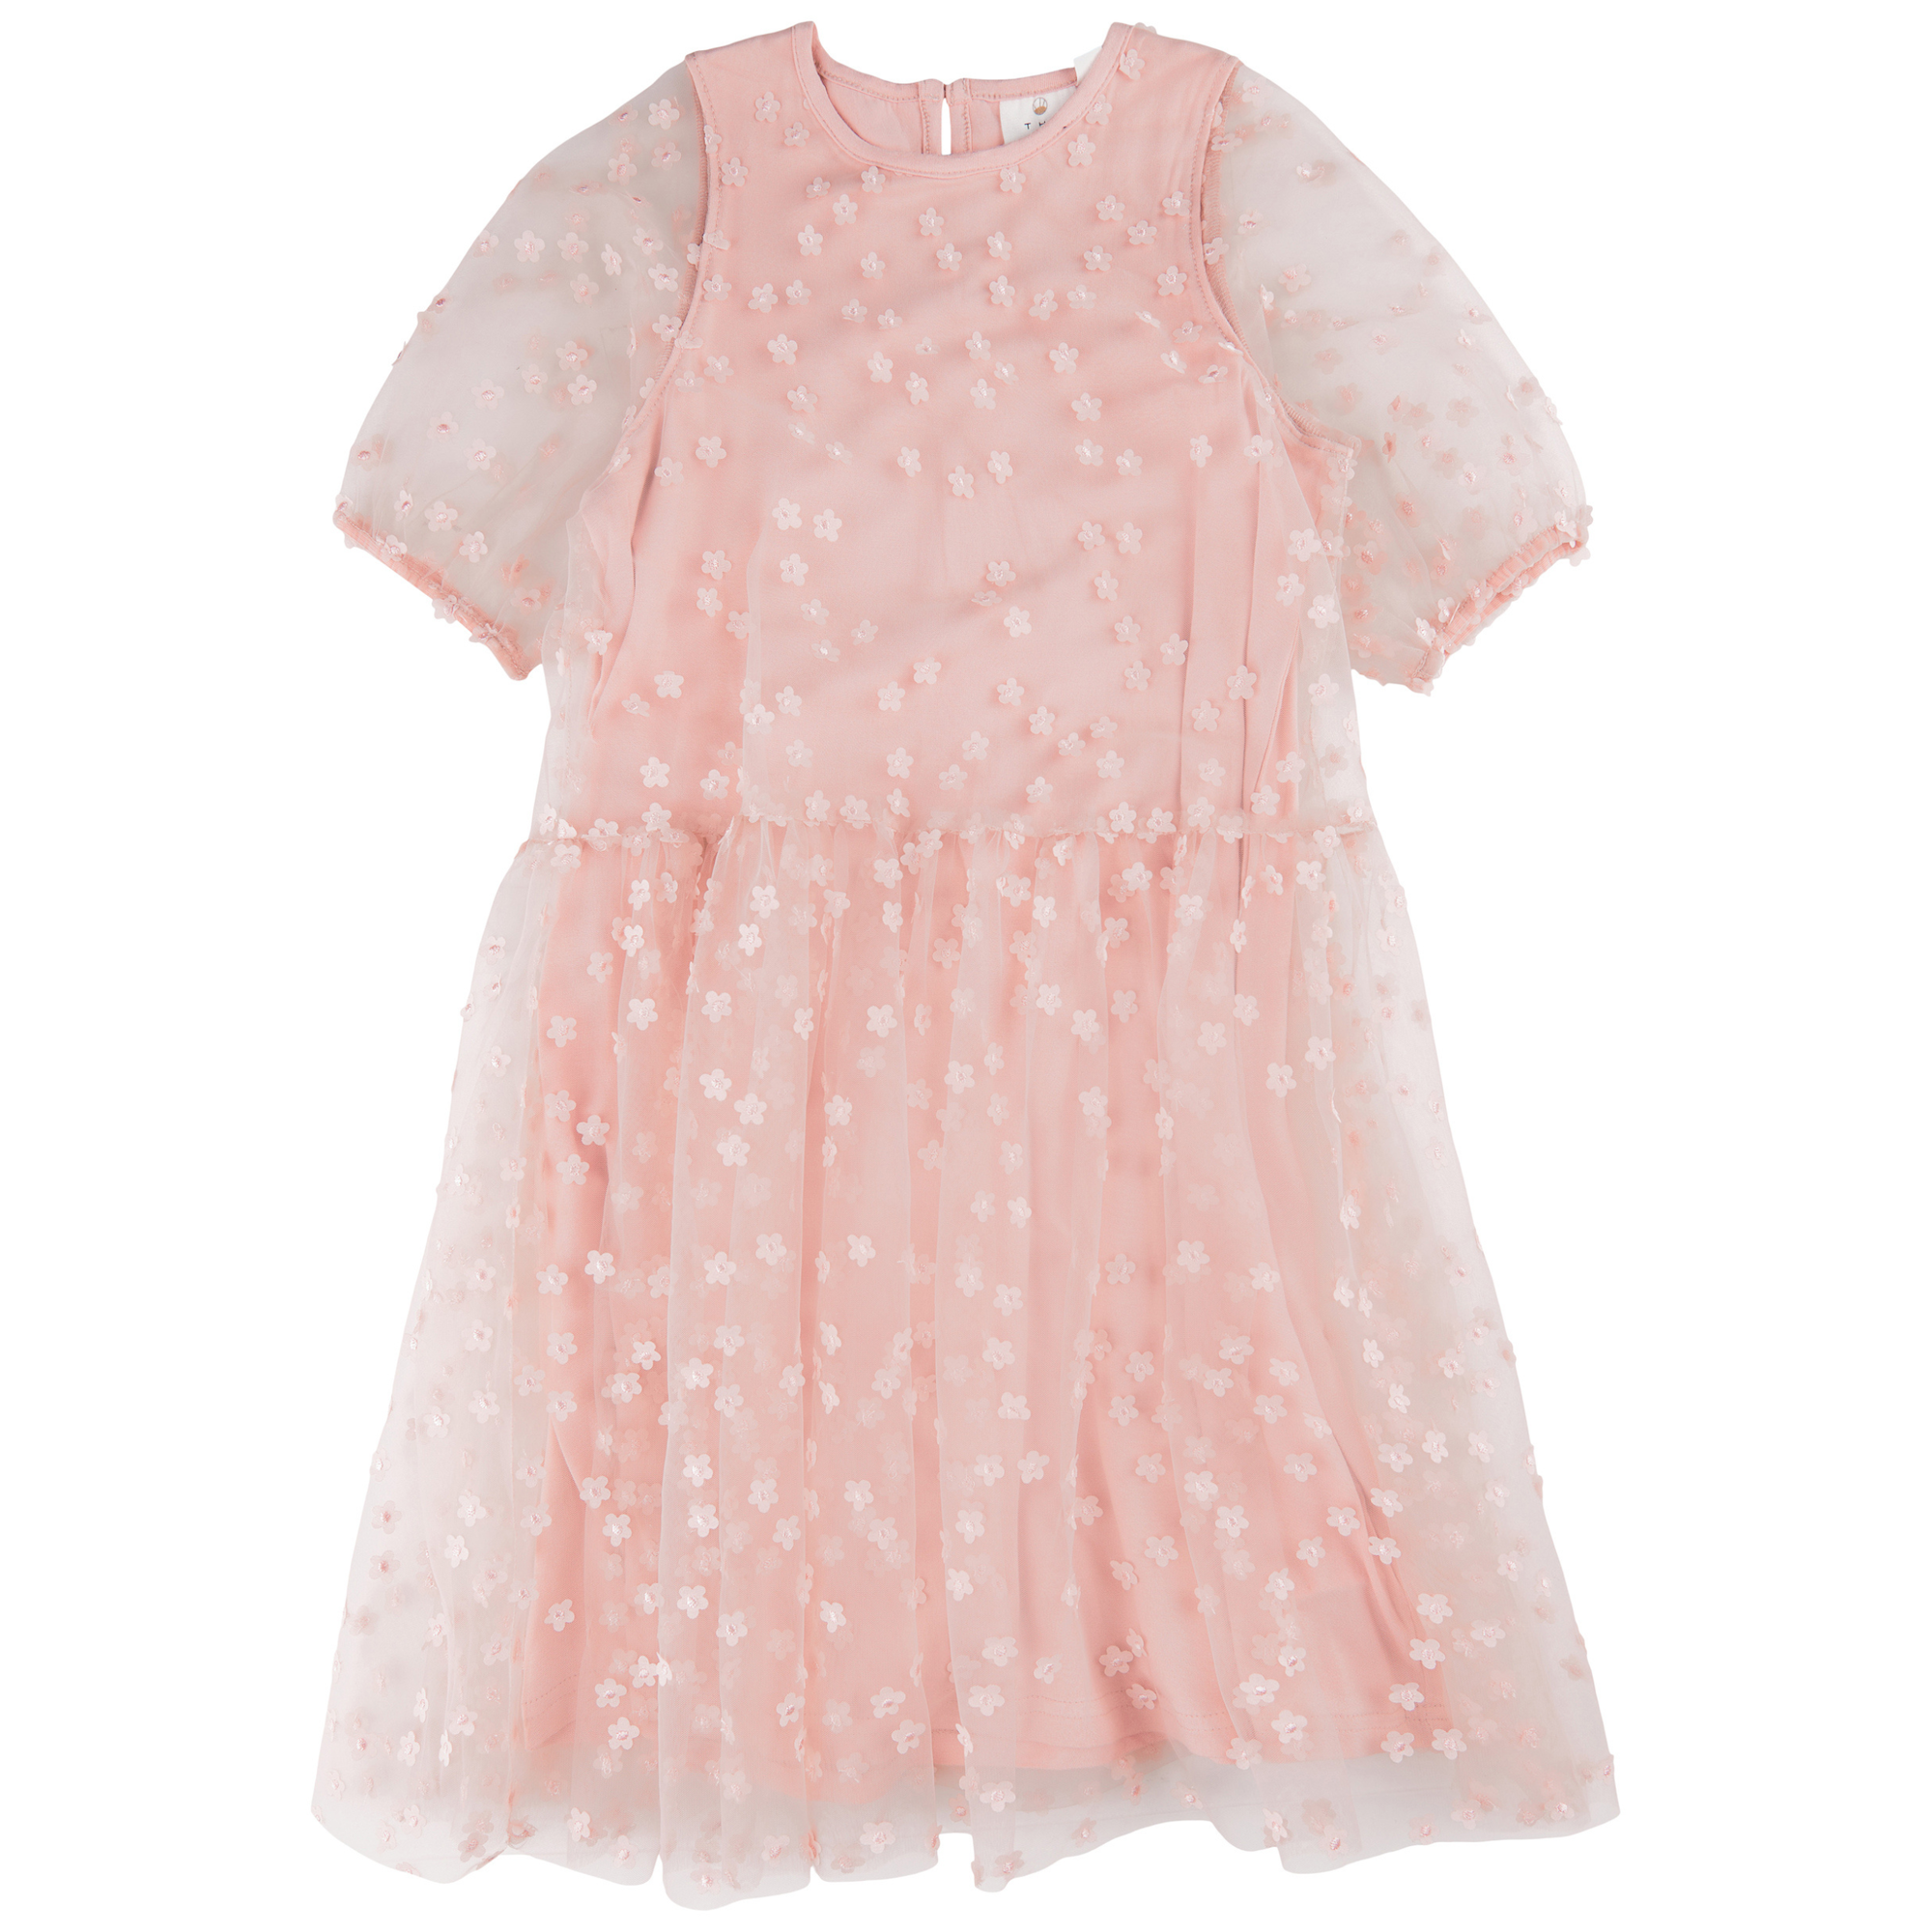 THE NEW - Gracelyn SS Dress (TN4962) - Peach Beige